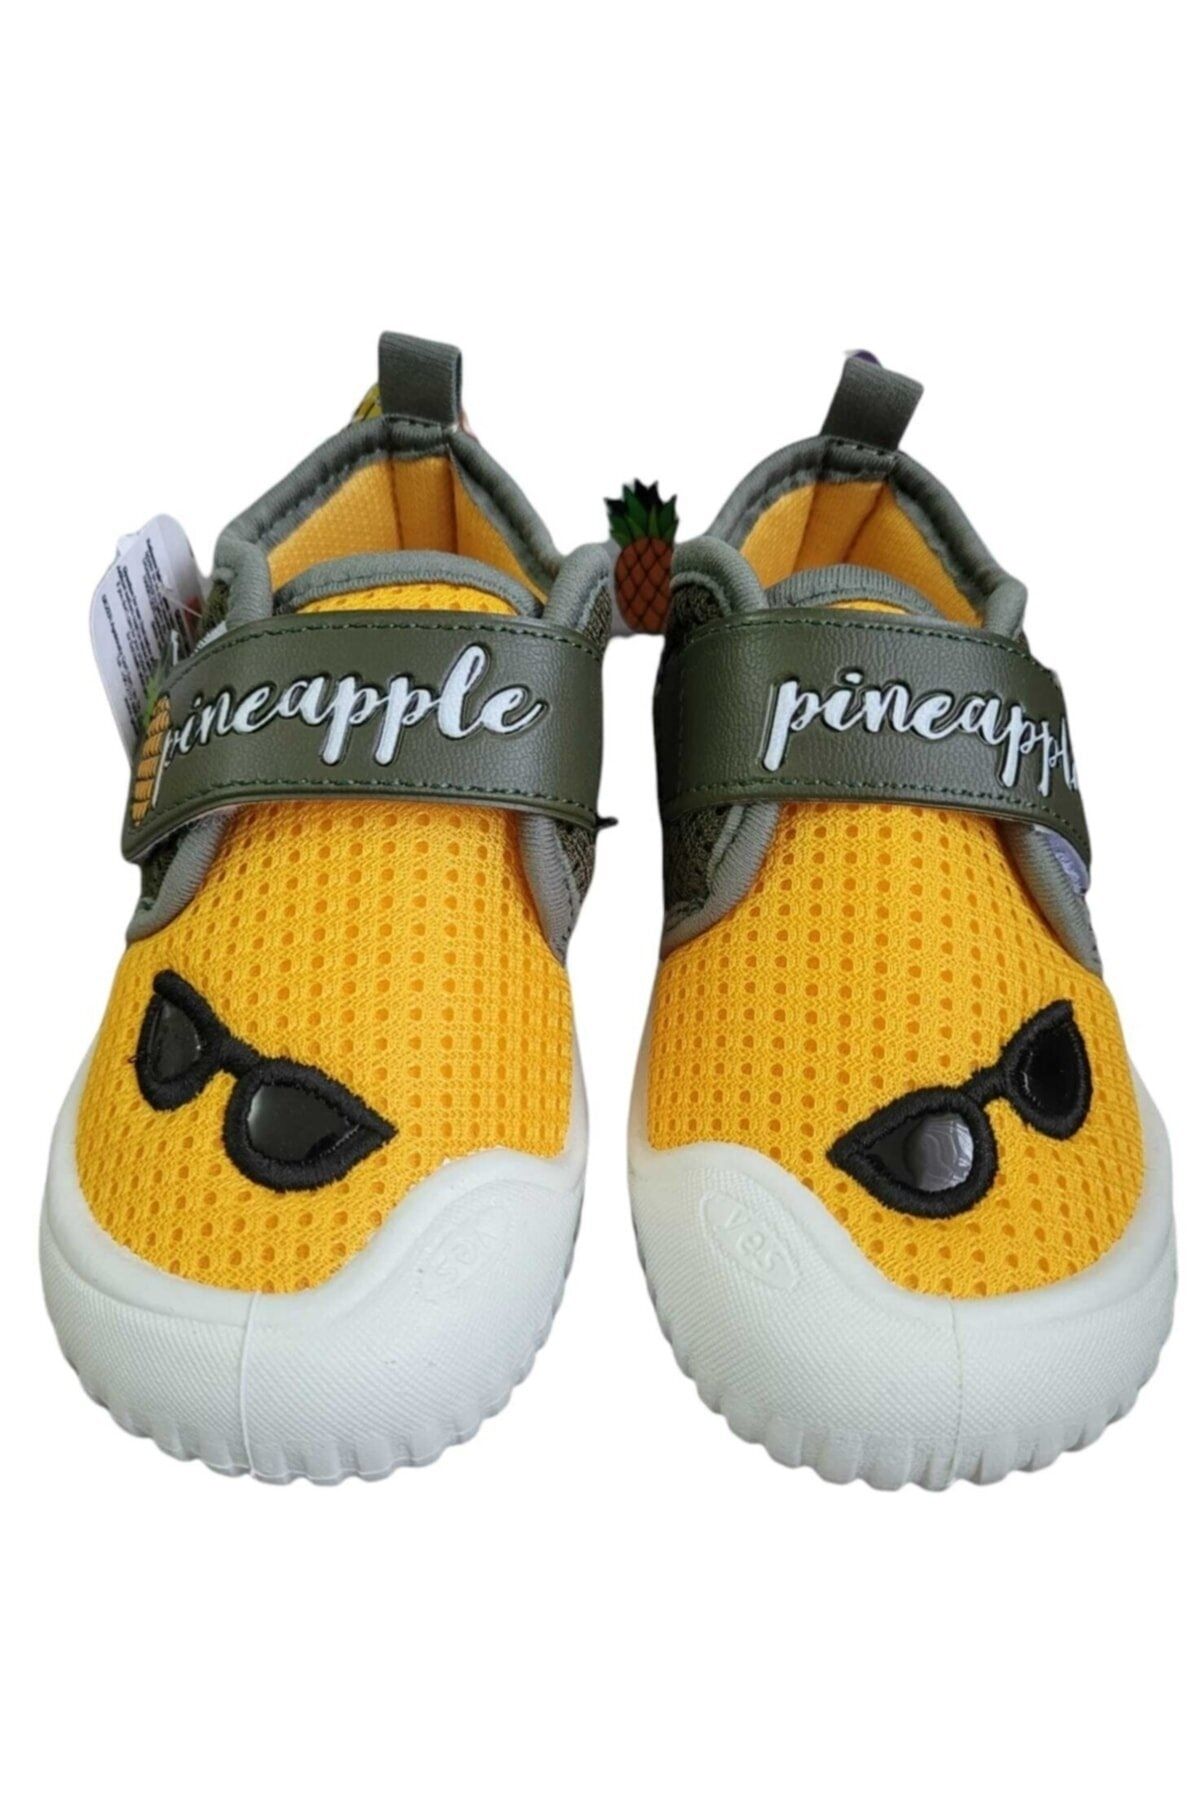 Gezer Çocuk Ev Okul Kreş Yumuşak Keten Ayakkabı Panduf Ananas Model Kayma Yapmaz Taban Sarı Haki